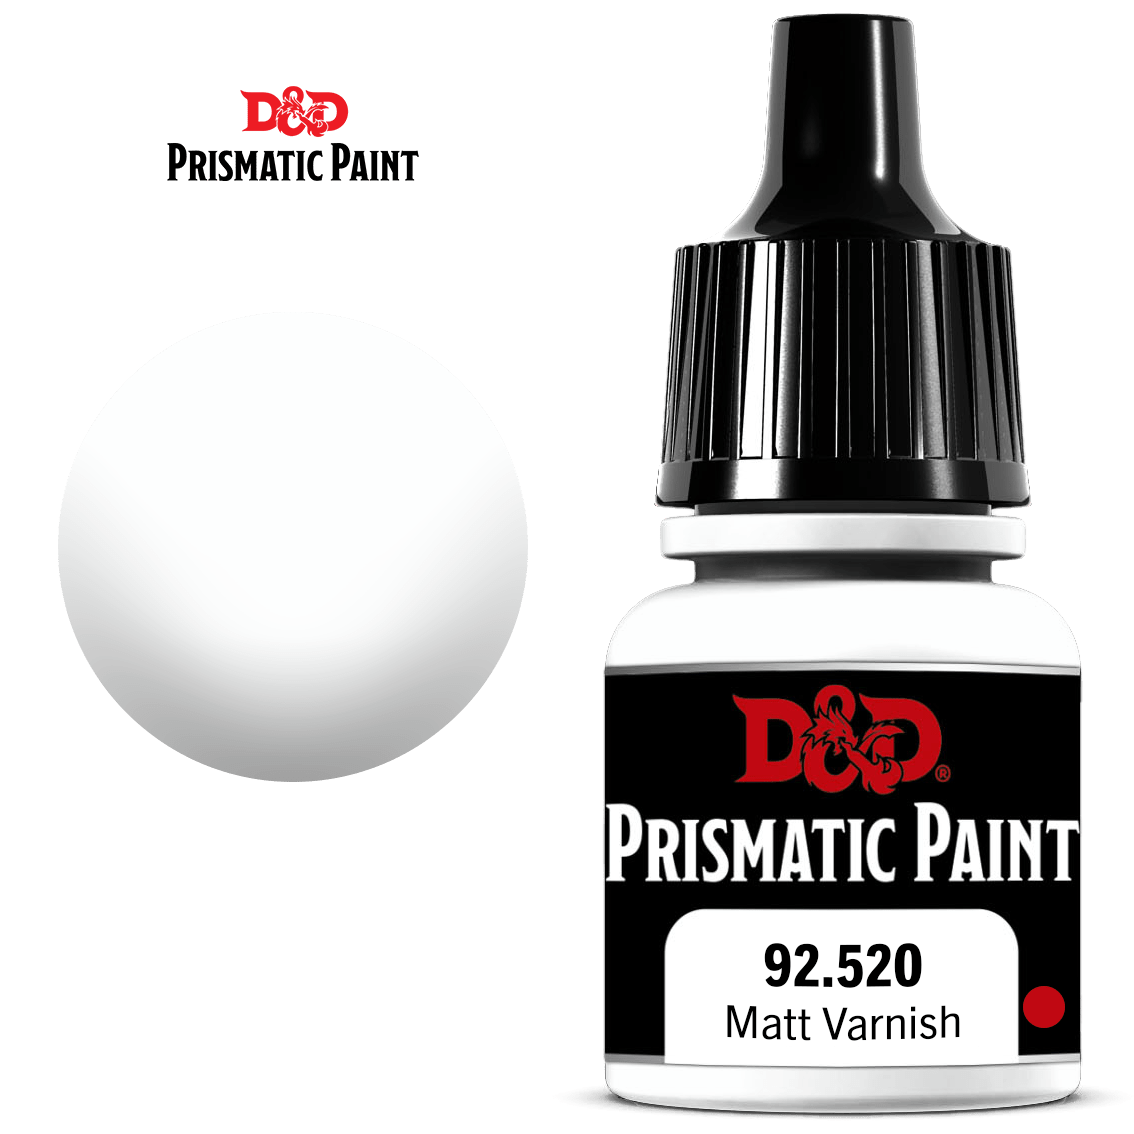 PRISMATIC PAINT: MATT VARNISH | BD Cosmos